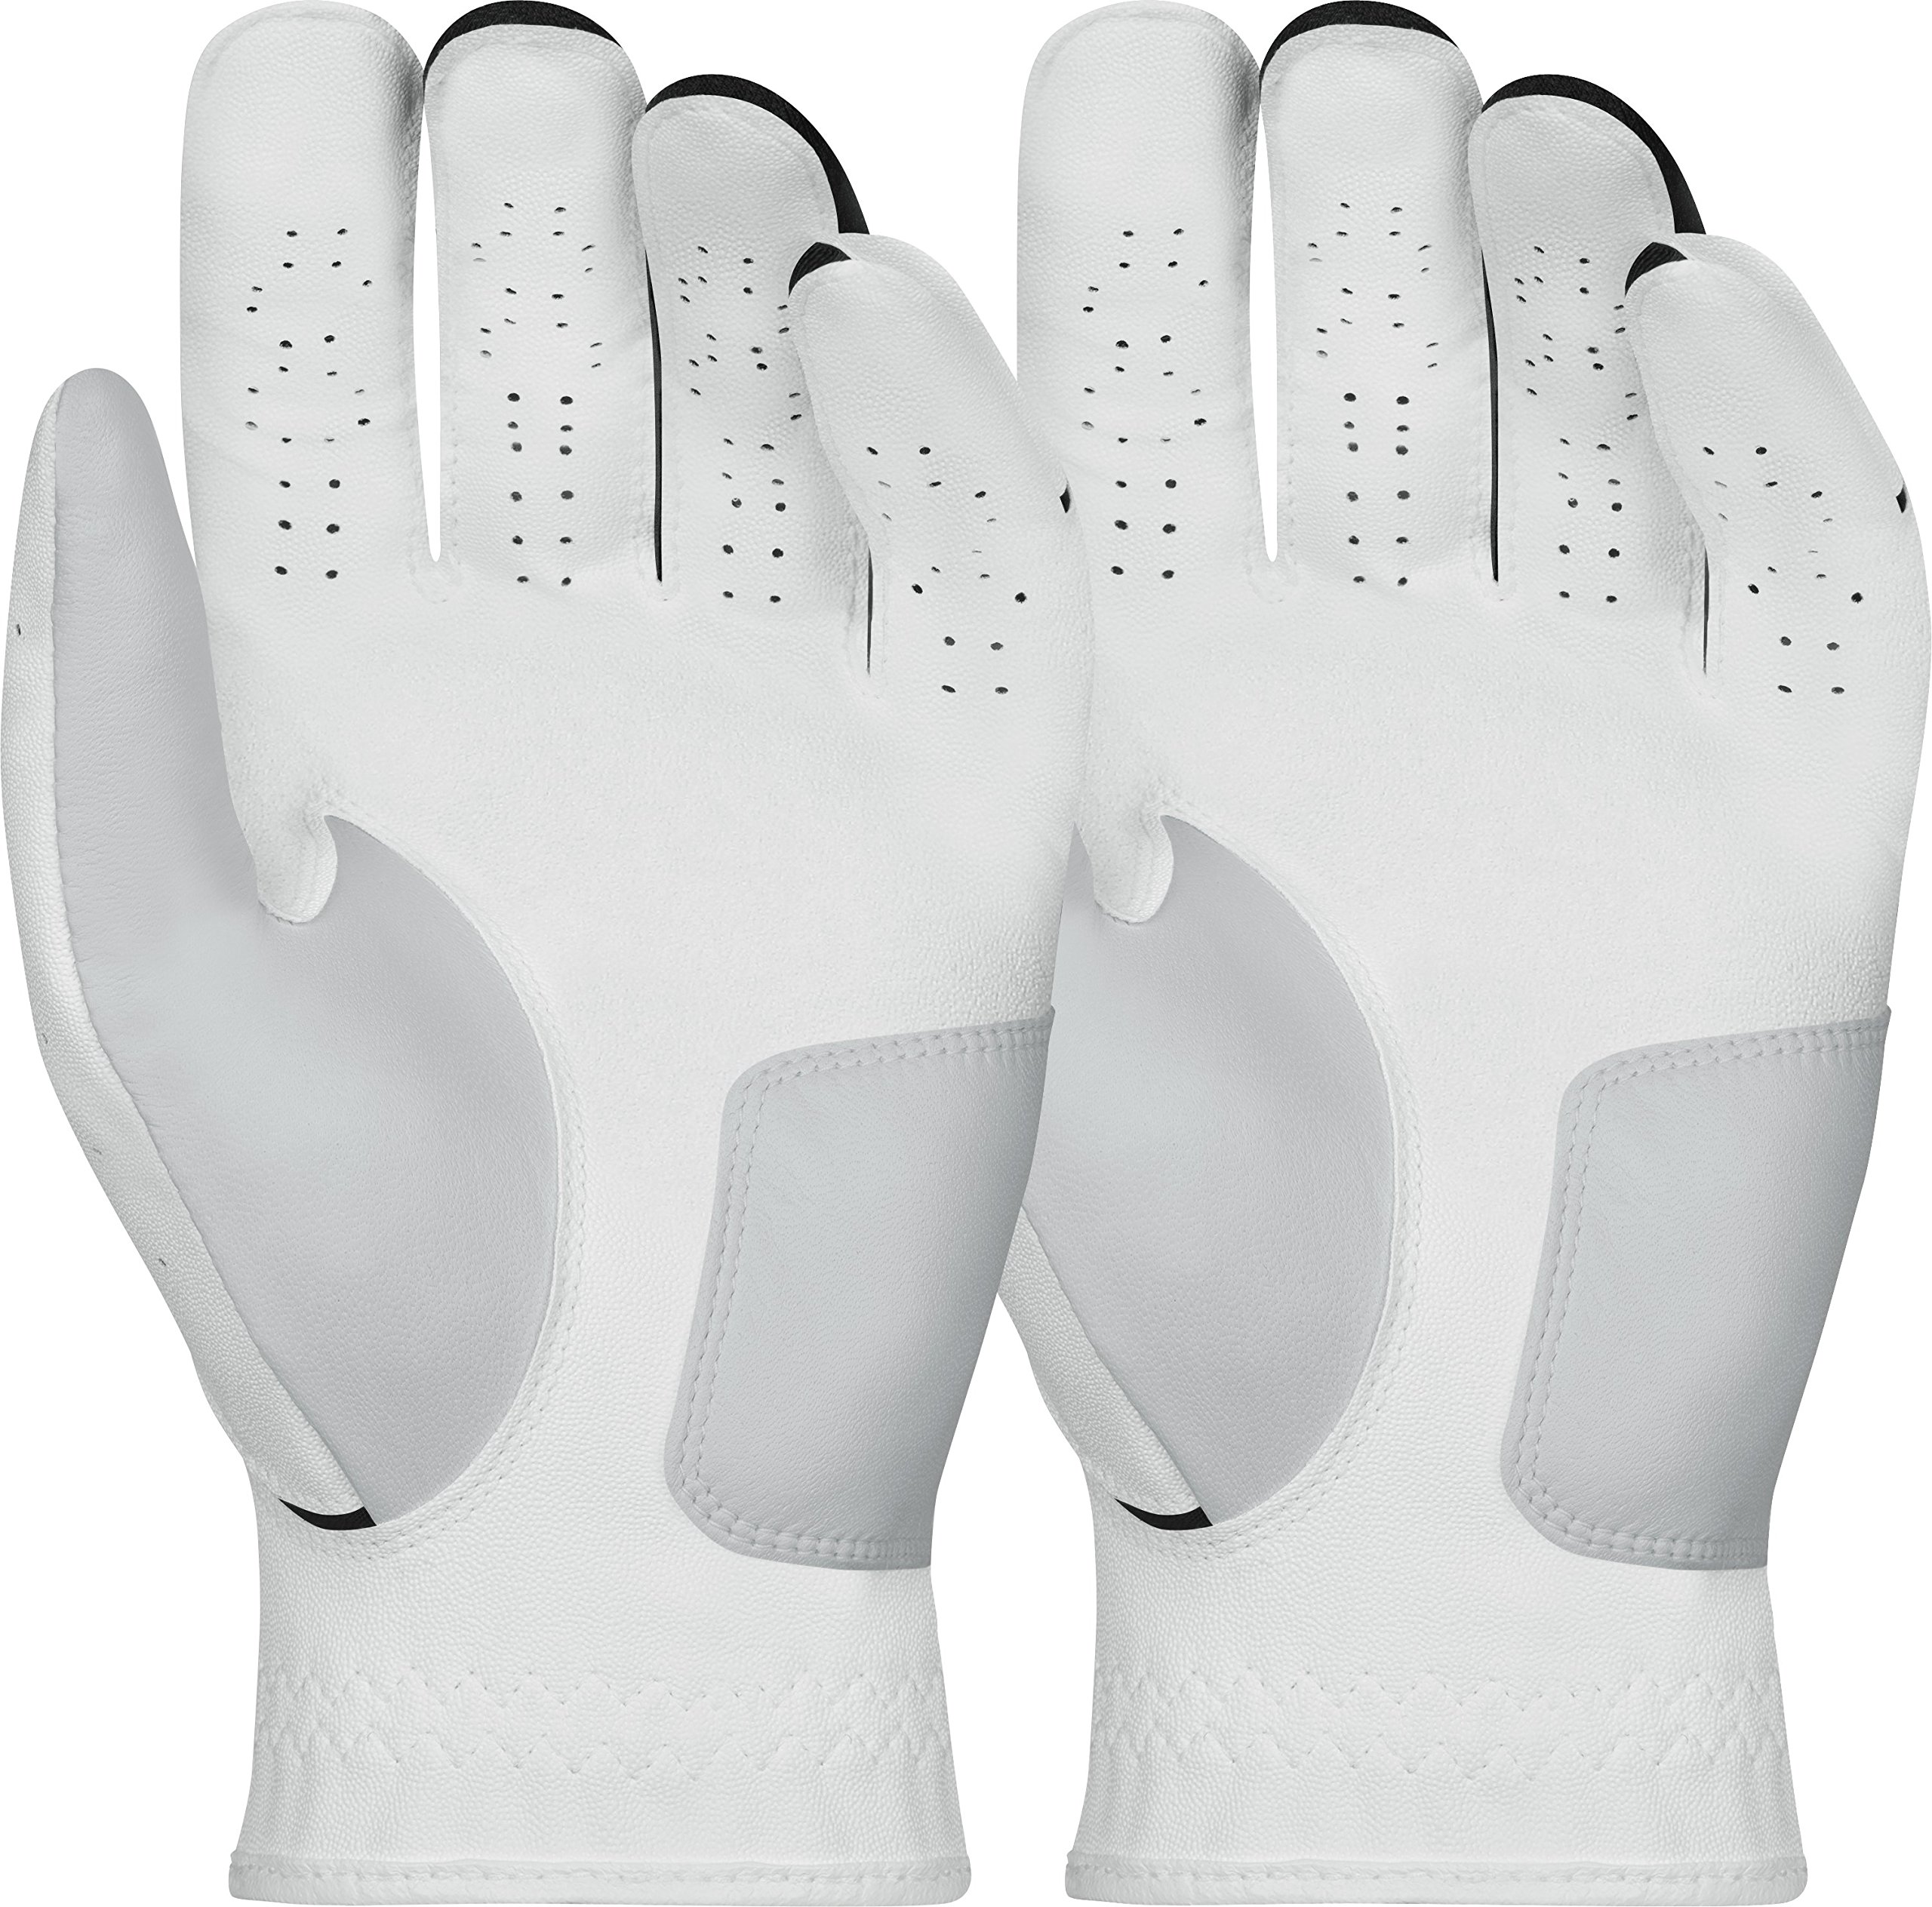 Nike Men's Dura Feel Golf Glove (2-Pack) (White), Large, Left Hand